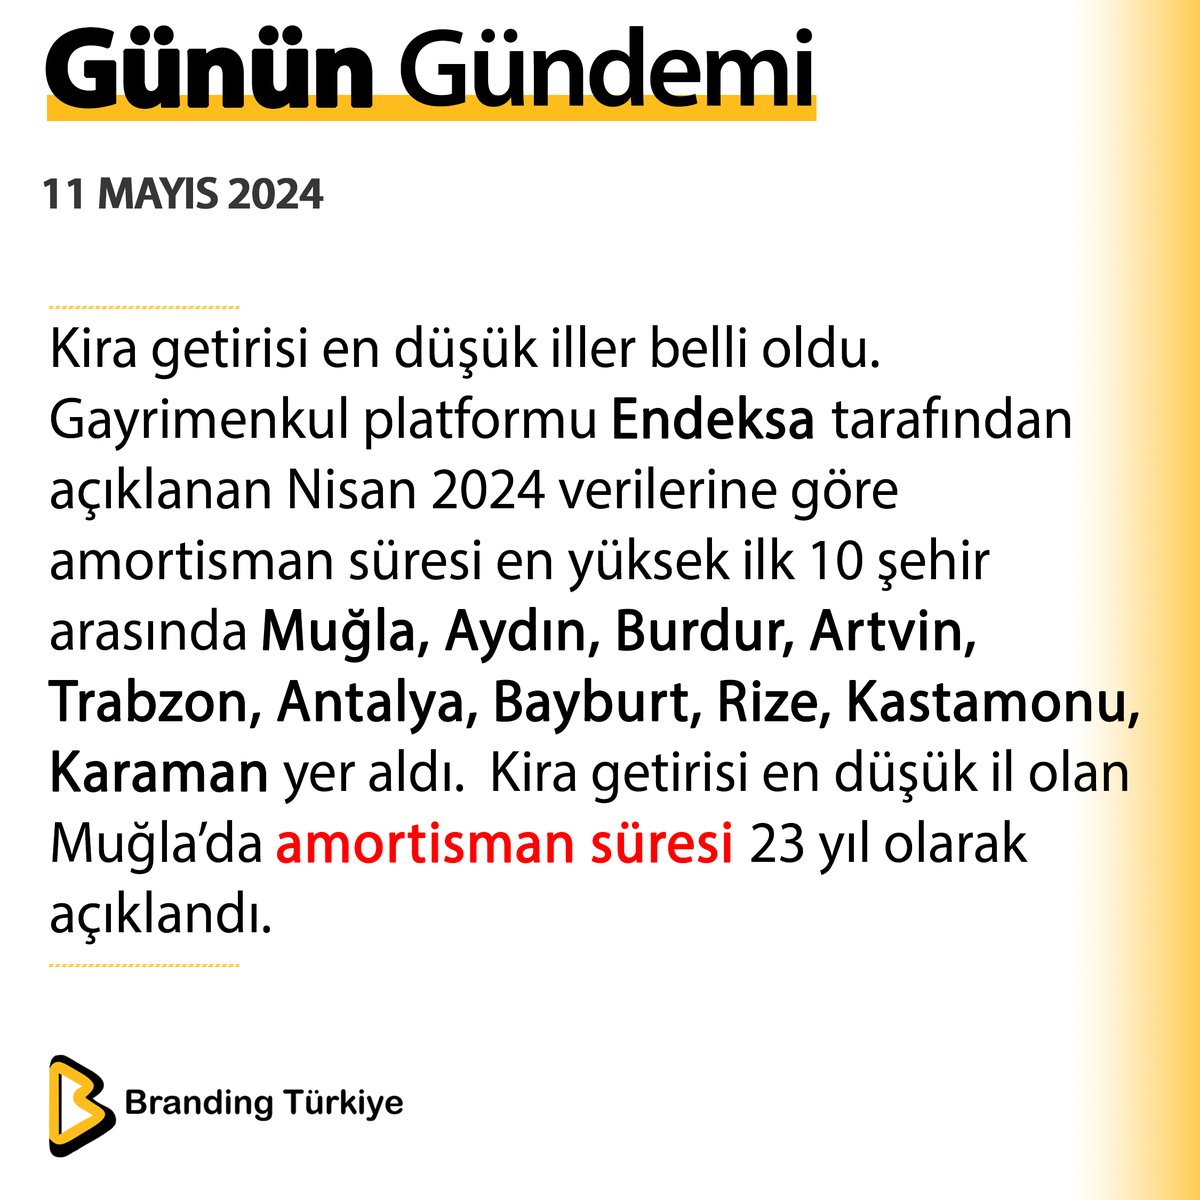 #11Mayıs2024

Kira getirisi en düşük iller belli oldu. 

▶ brandingturkiye.com
#BrandingTürkiye #Haberler #Konut #Kira #Gayrimenkul #Muğla